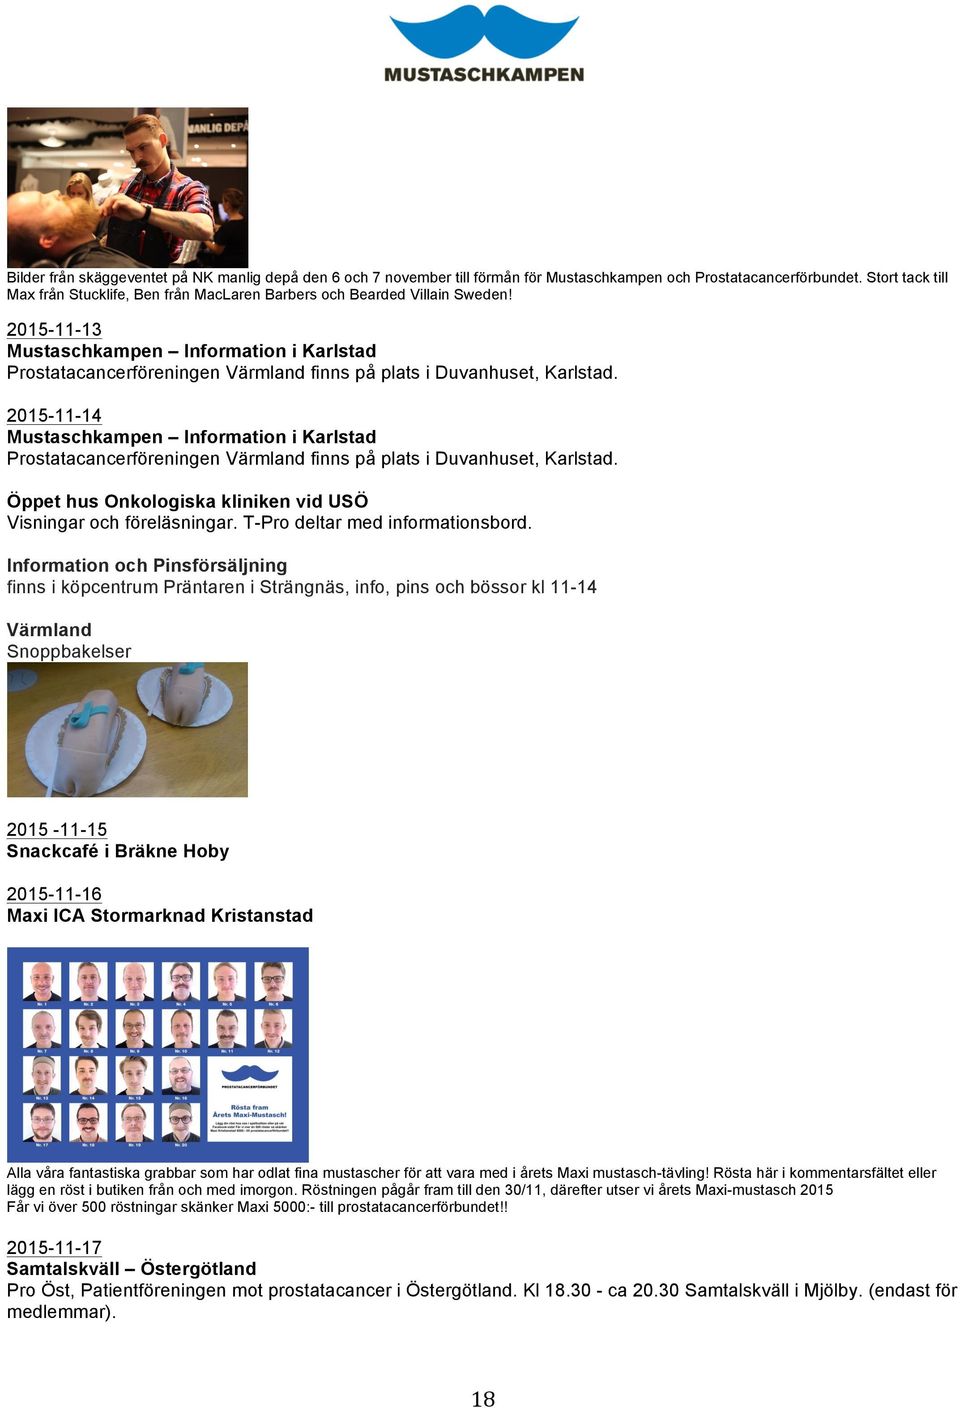 2015-11-13 Mustaschkampen Information i Karlstad Prostatacancerföreningen Värmland finns på plats i Duvanhuset, Karlstad.